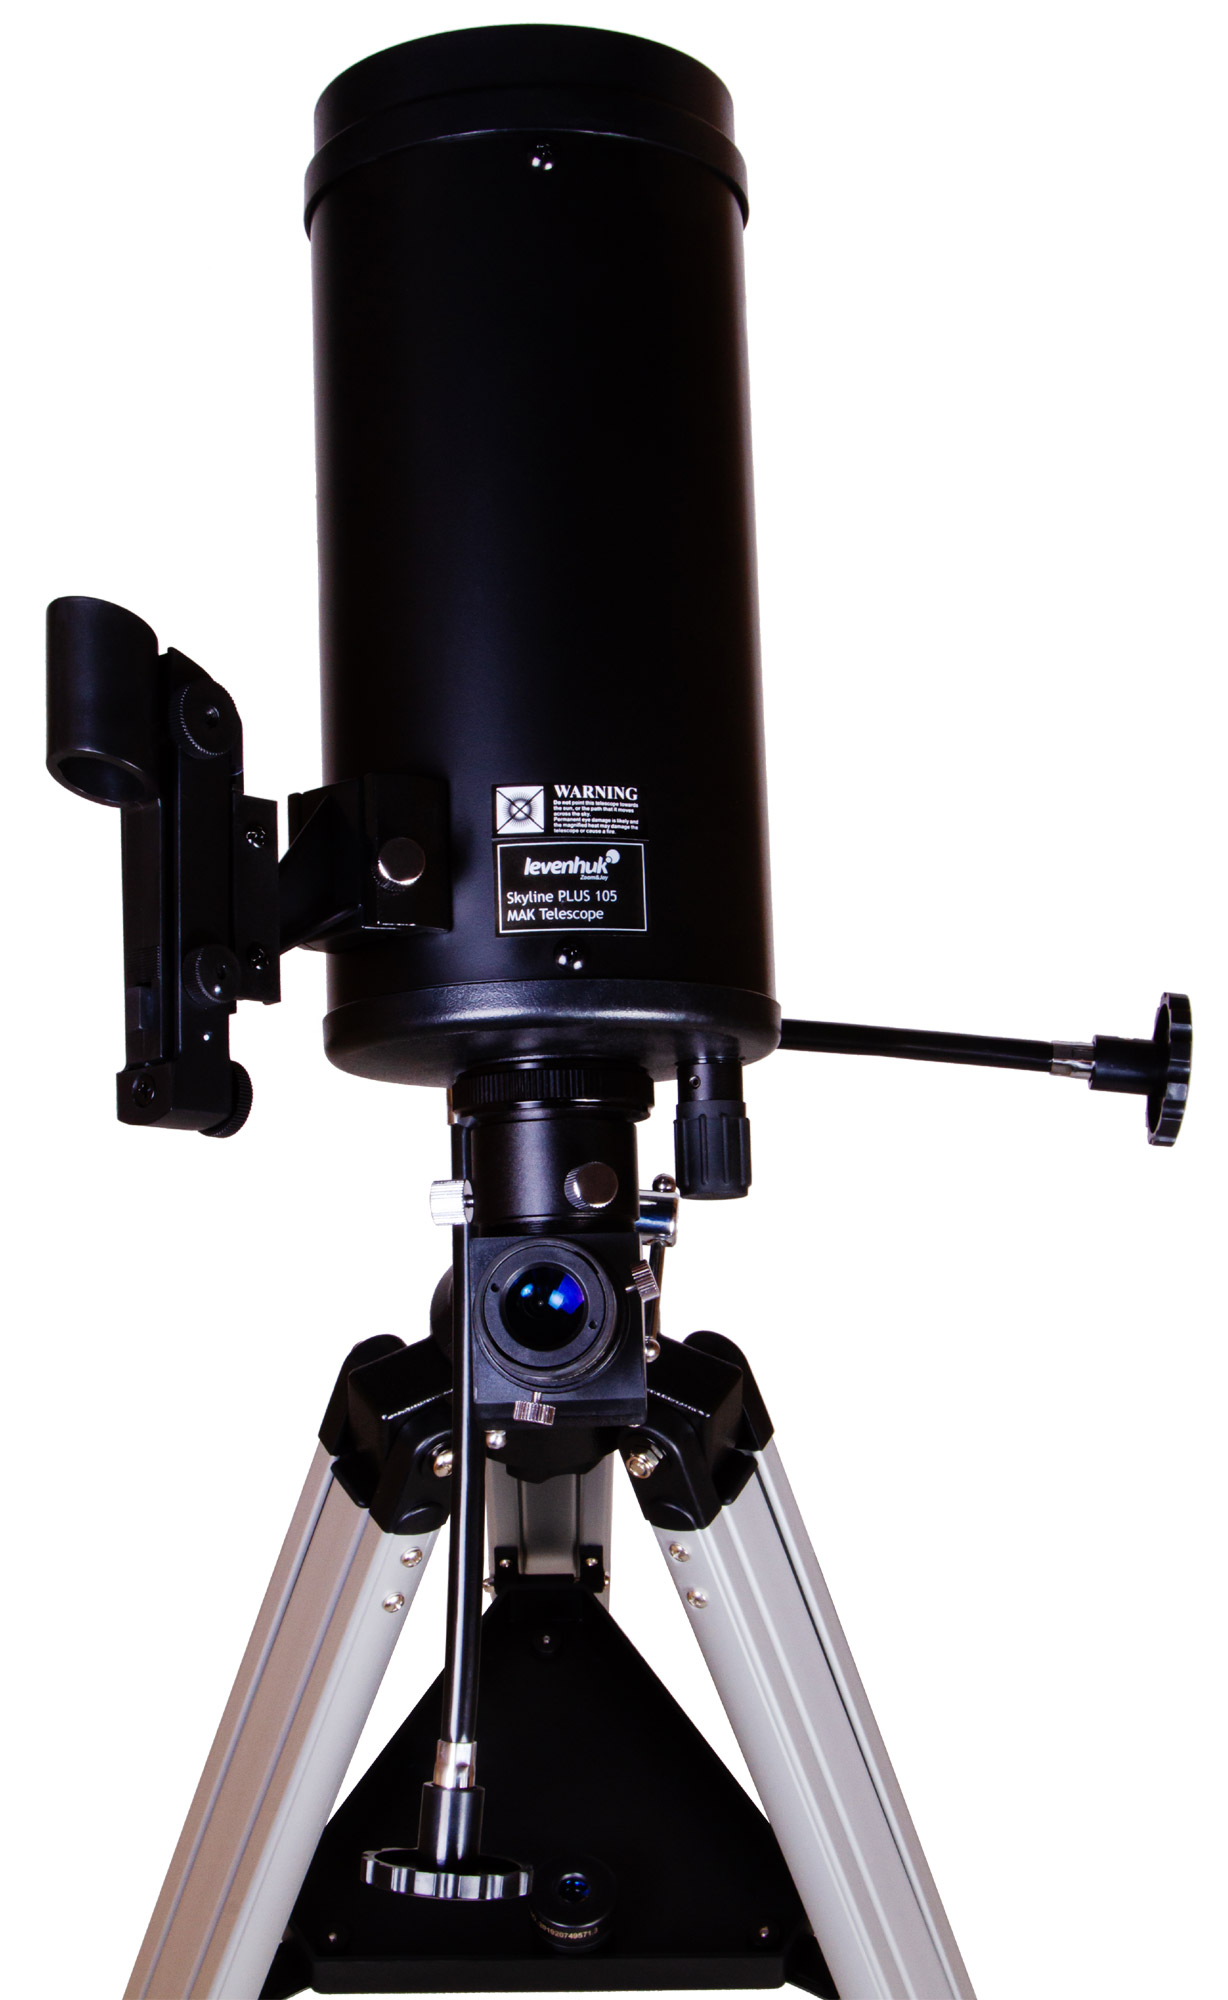 Телескоп Levenhuk Skyline PLUS 105 MAK купить по оптимальной цене,  доставка по России, гарантия качества